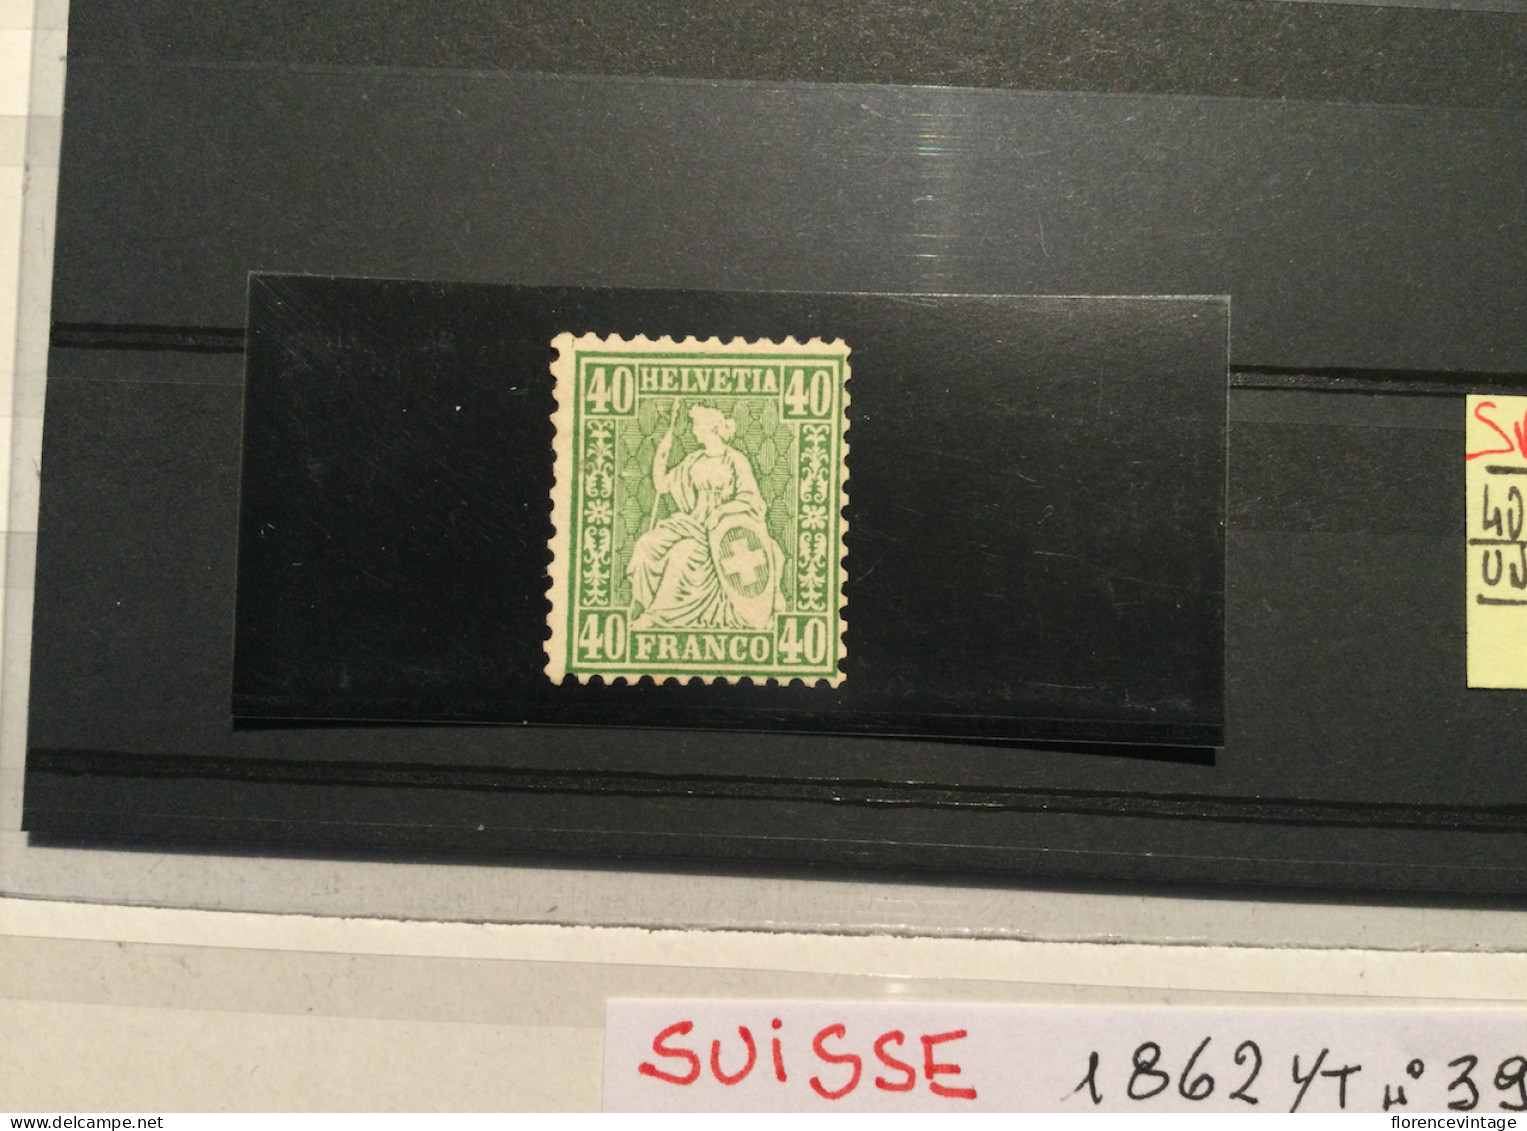 Svizzera Suisse 1862 YT 39 40 Cent Verde Vert Nuovo Neuf - Ungebraucht